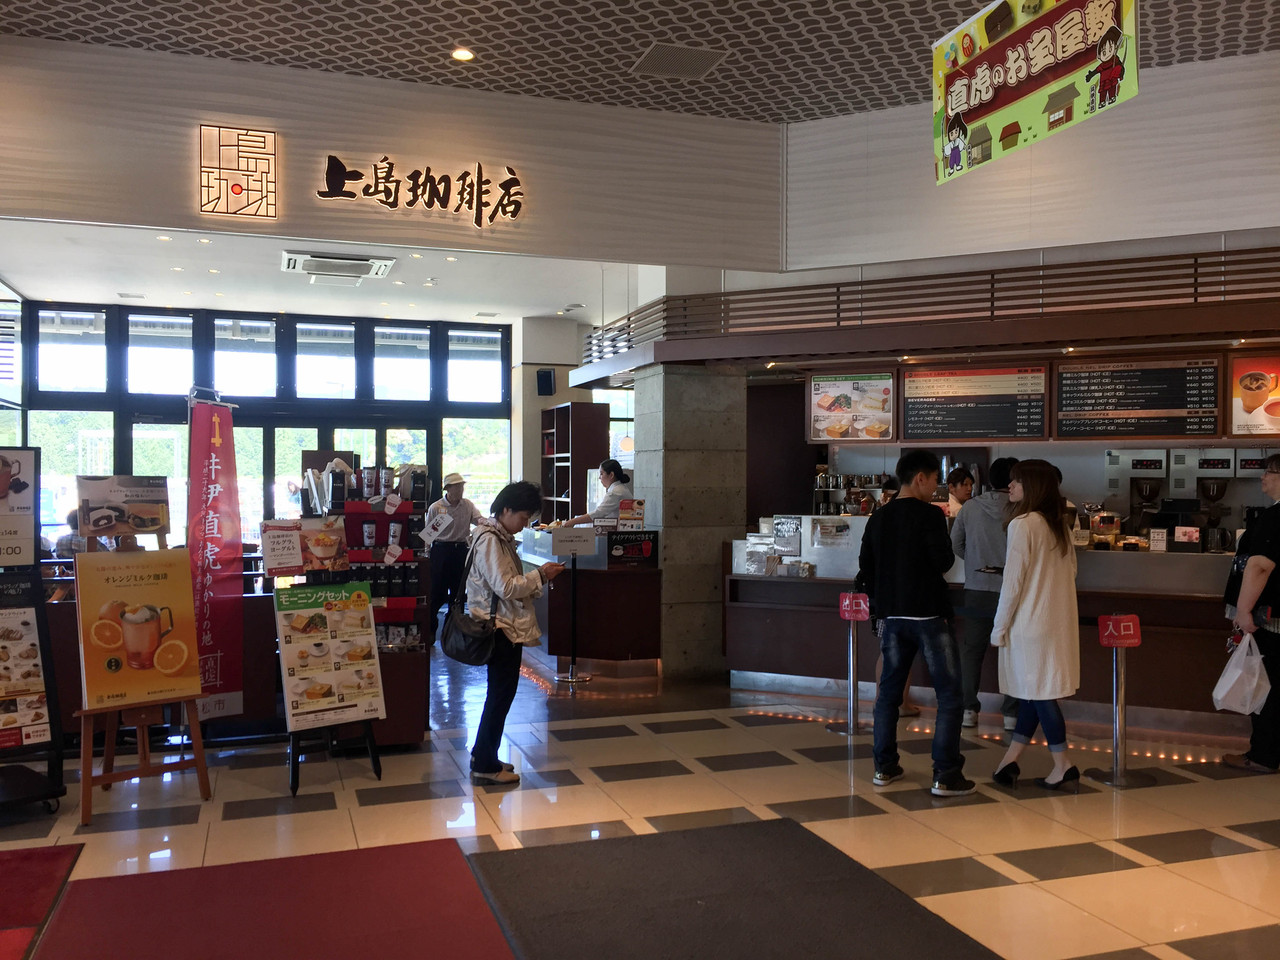 開店 新東名のneopasa浜松 下り に上島珈琲店が12月1日オープンした模様 上下線ともに上島珈琲で占拠だ カフェドクリエがあったところ 浜松つーしん